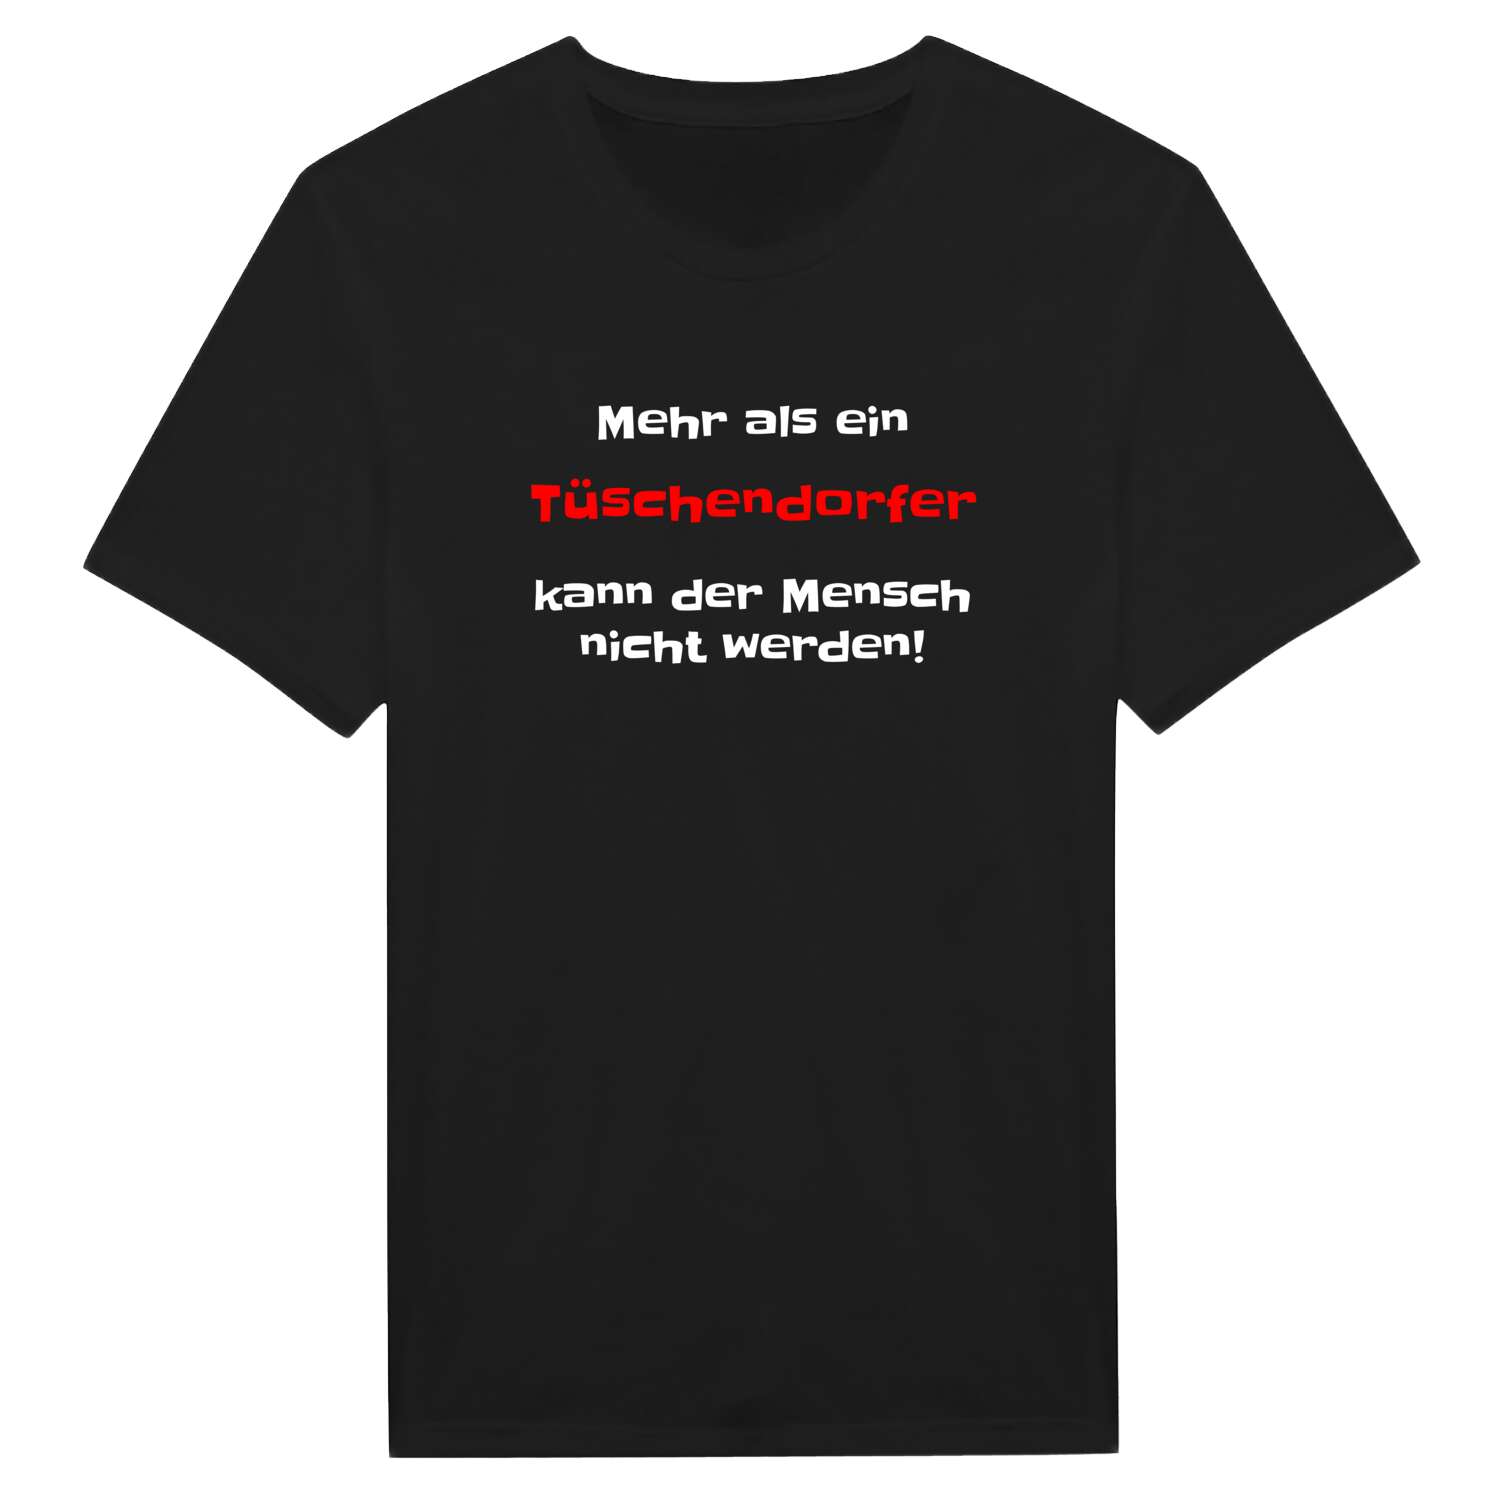 Tüschendorf T-Shirt »Mehr als ein«